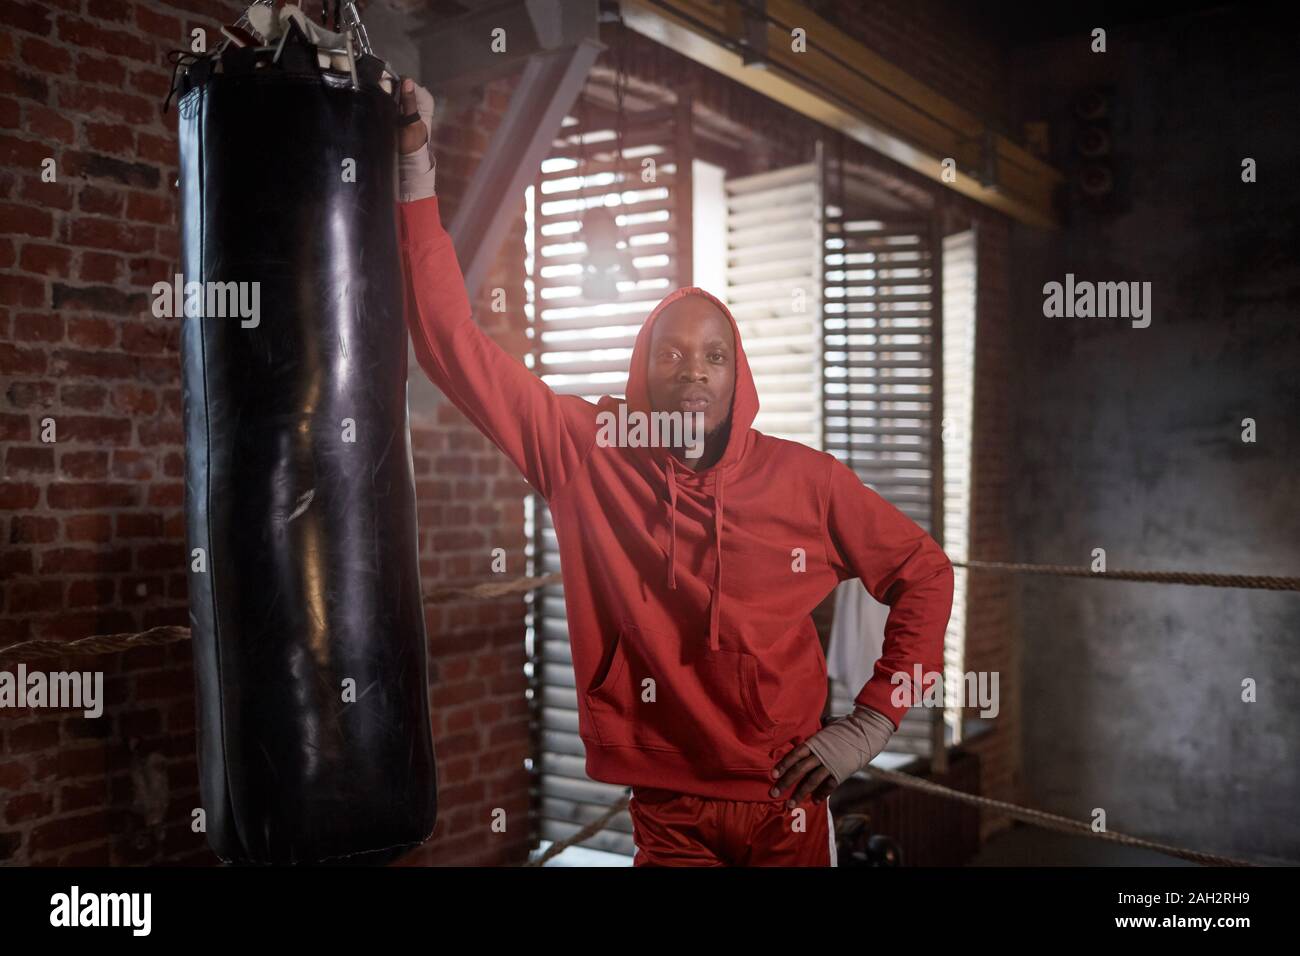 Portrait de jeune homme africain dans les vêtements de sport, debout près de l'entraînement de sac de boxe et looking at camera in gym Banque D'Images